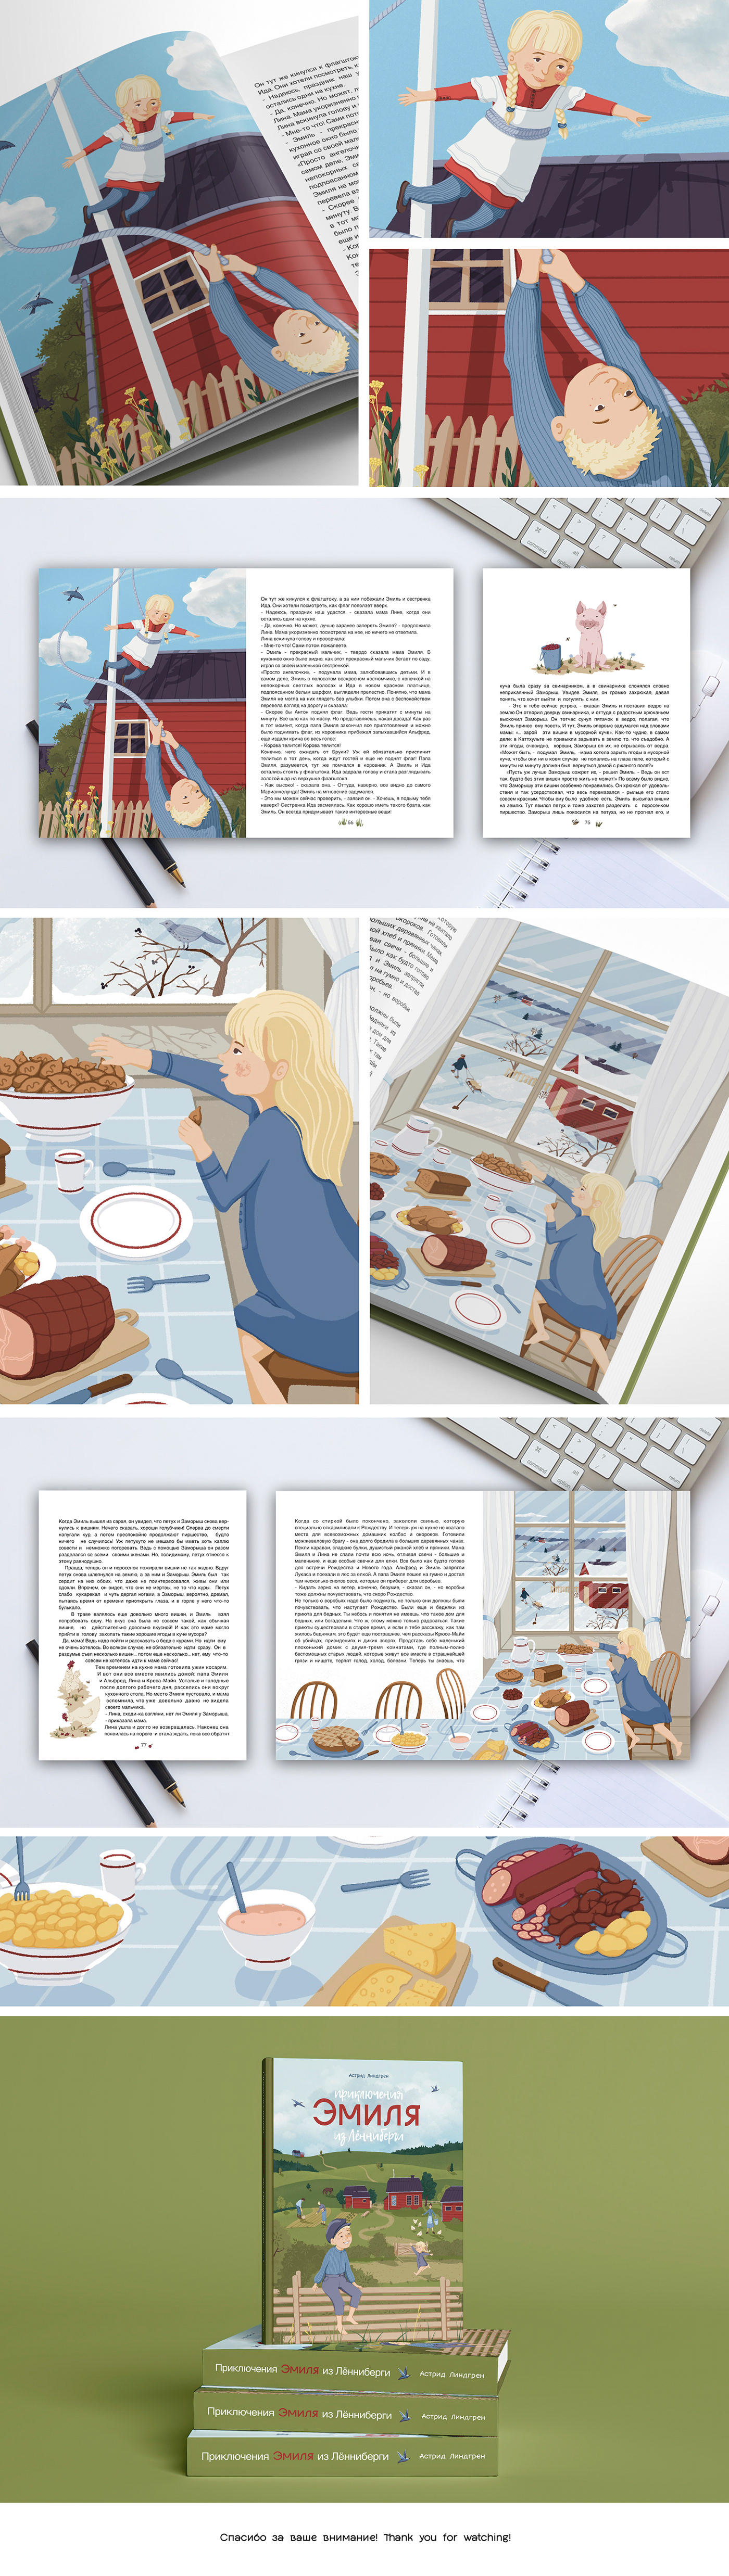 book design book illustration children illustration children book illustrations cover Digital Art  Drawing  concept art Astrid Lindgren